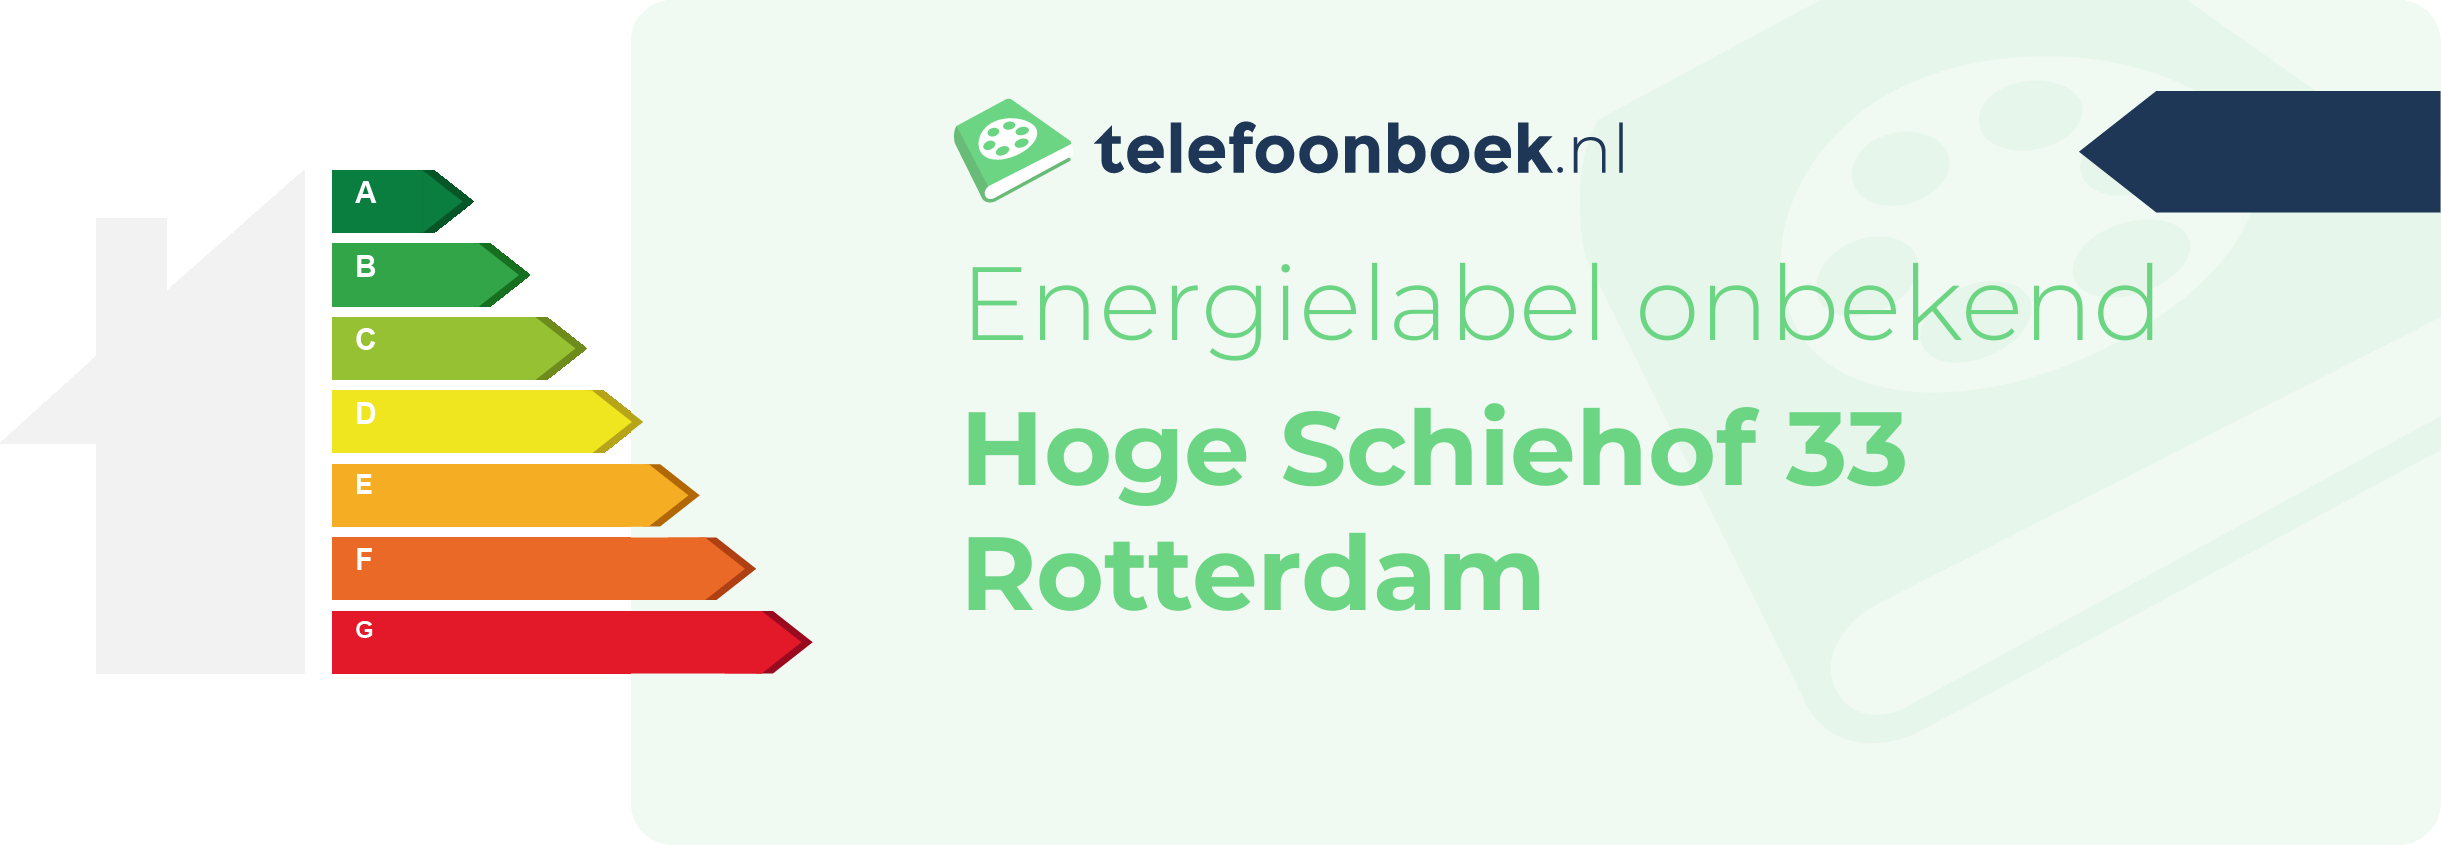 Energielabel Hoge Schiehof 33 Rotterdam